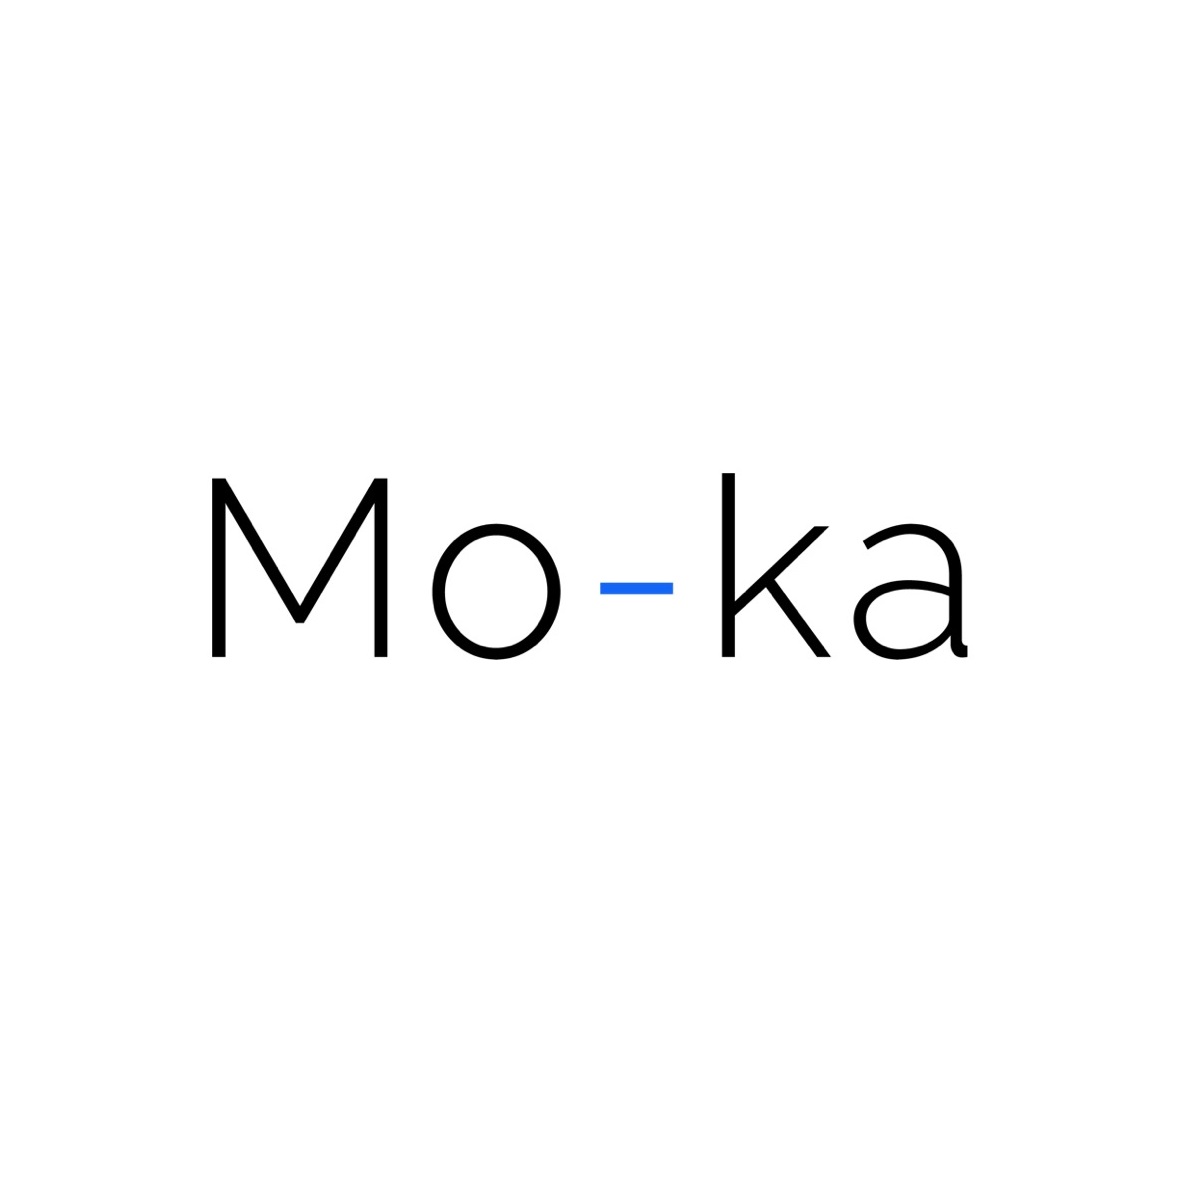 Mo-ka